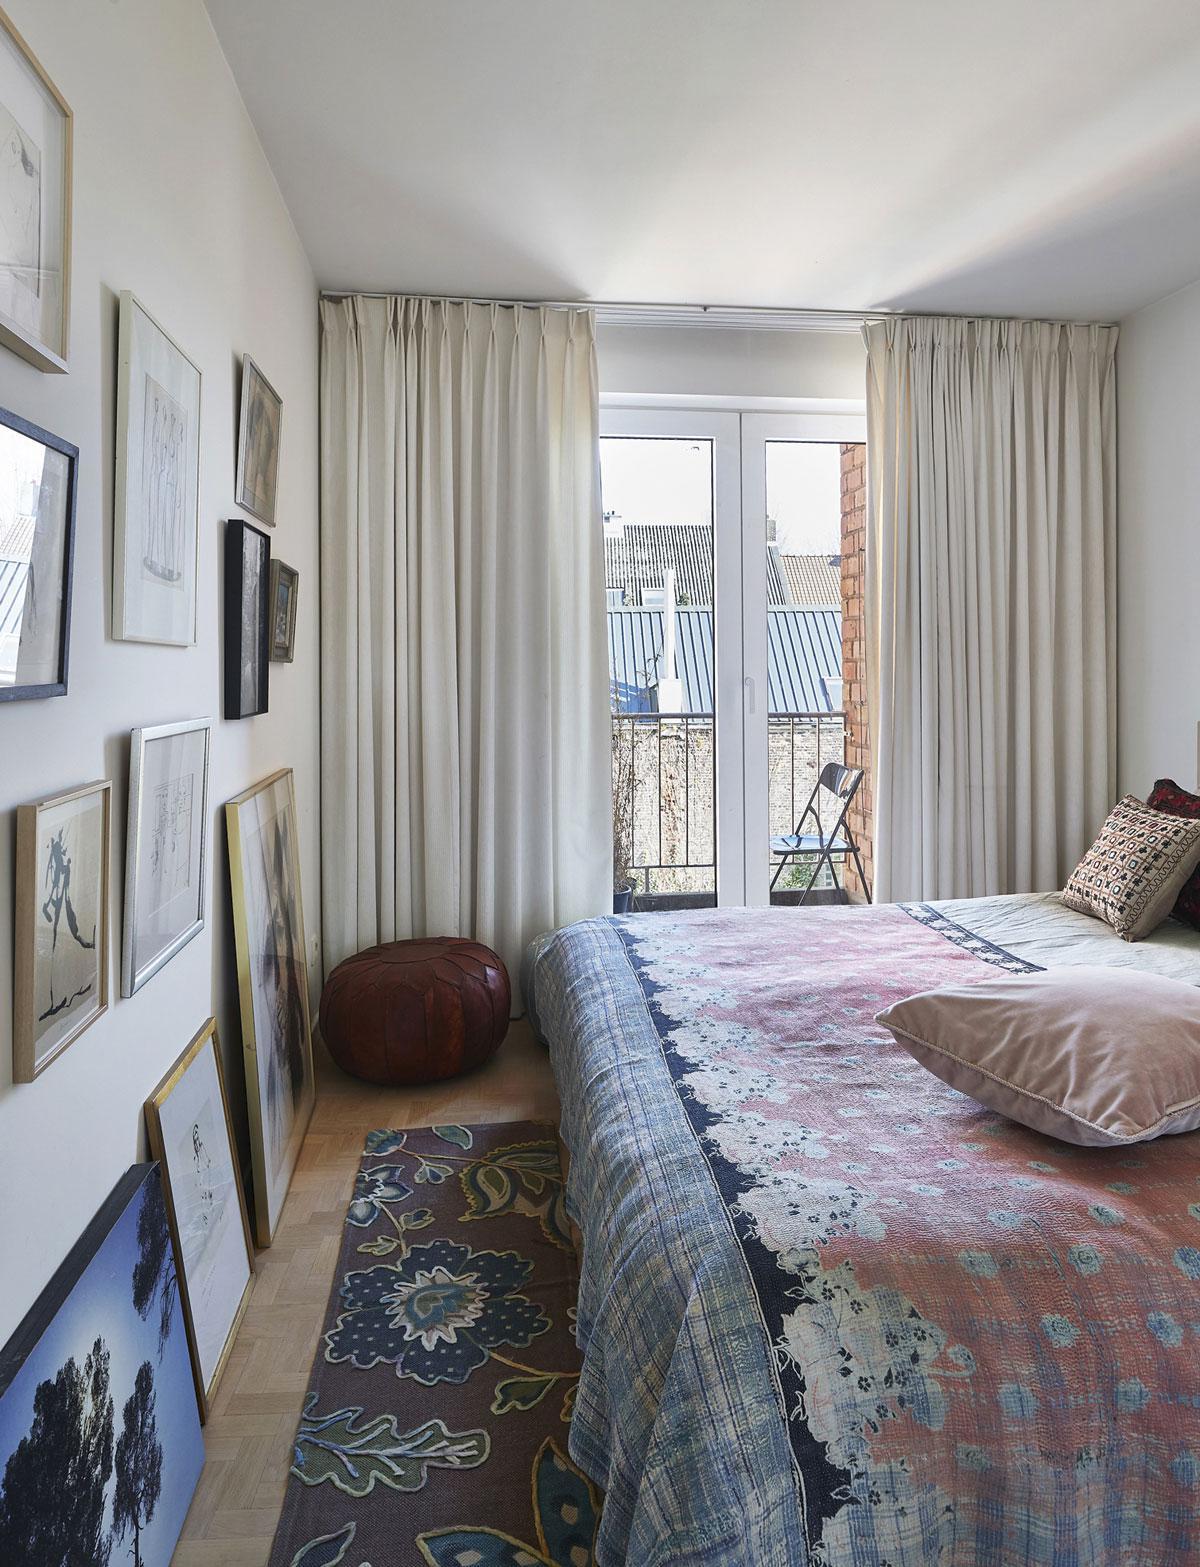 De slaapkamer, een romantische cocon met een muur vol grafiek van bevriende kunstenaars, kijkt uit op de historische Gentse Machariuswijk.